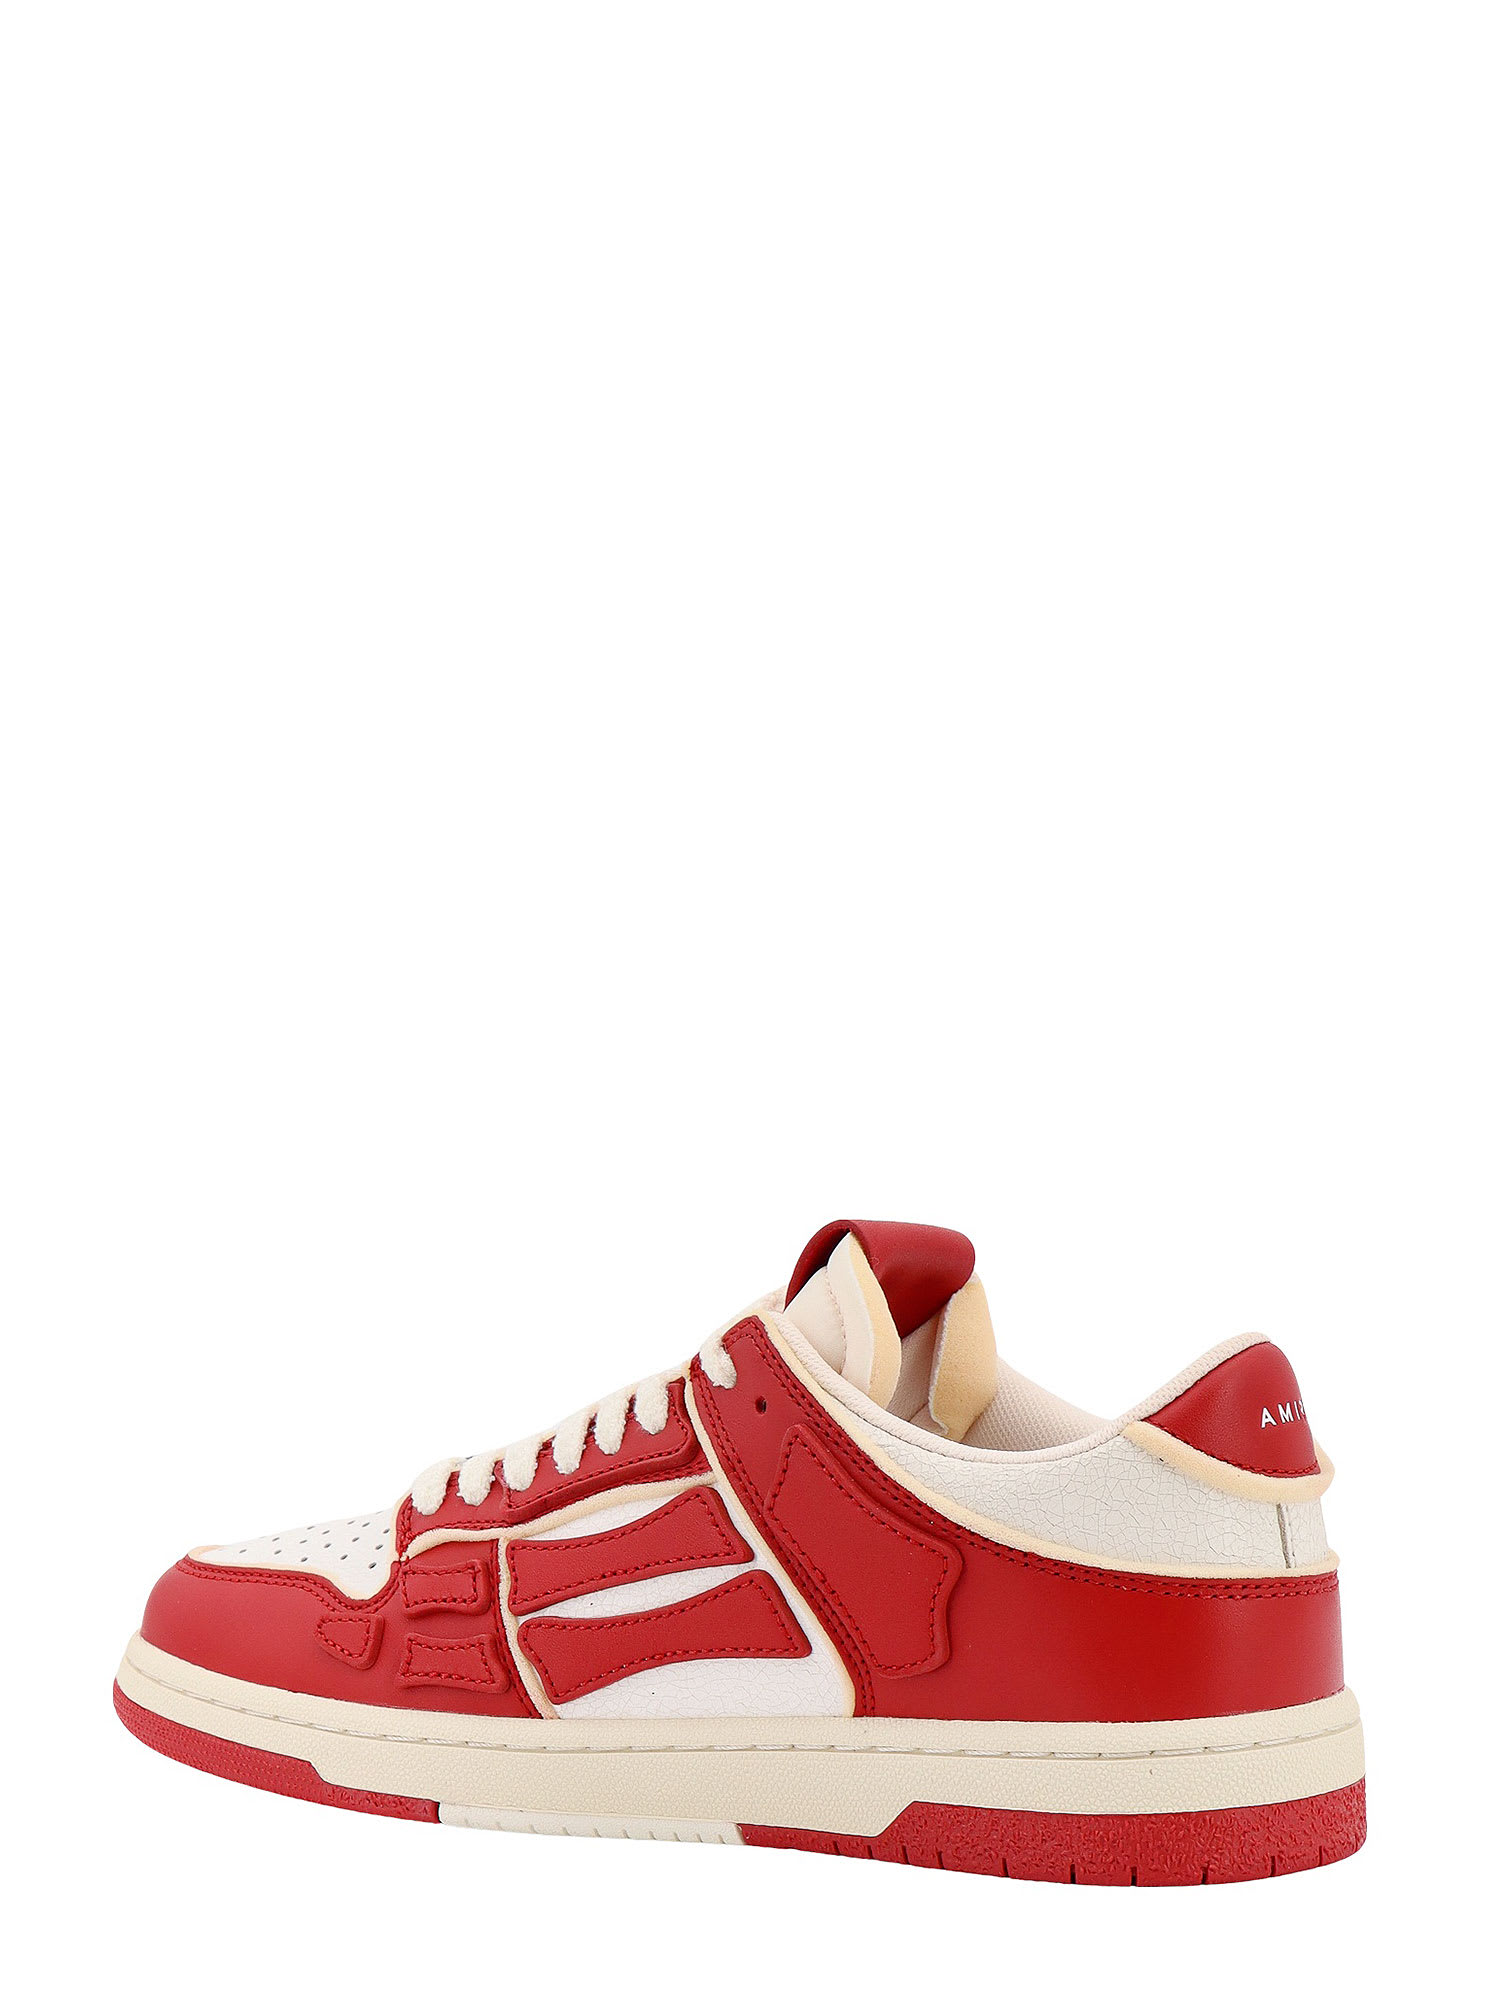 Shop Amiri Collegiate Skel Top Sneakers In Red/white